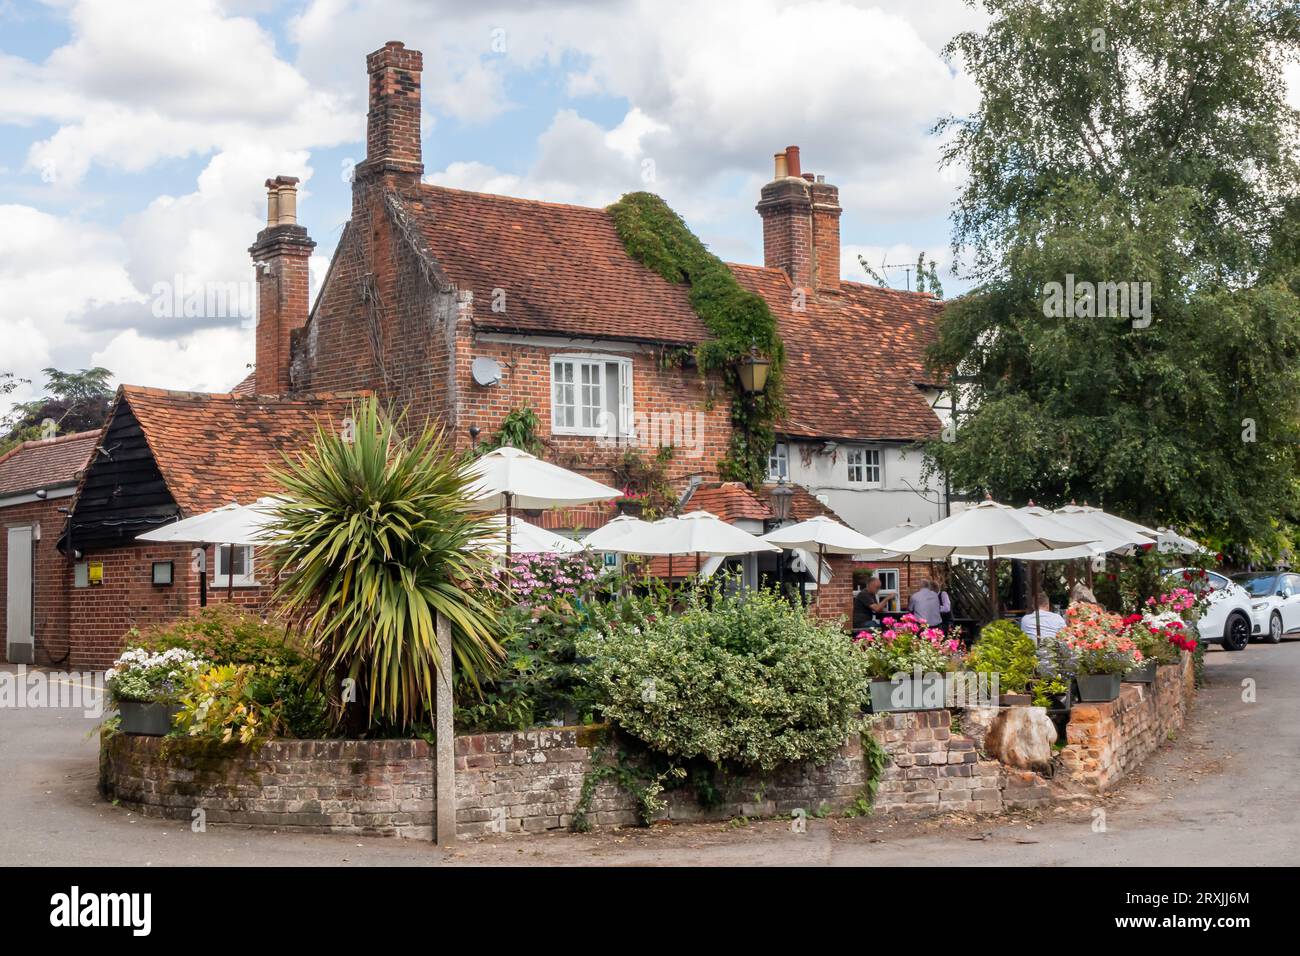 Pub de campagne anglais avec jardin en été, Little Marlow, Buckinghamshire, Angleterre, Royaume-Uni Banque D'Images